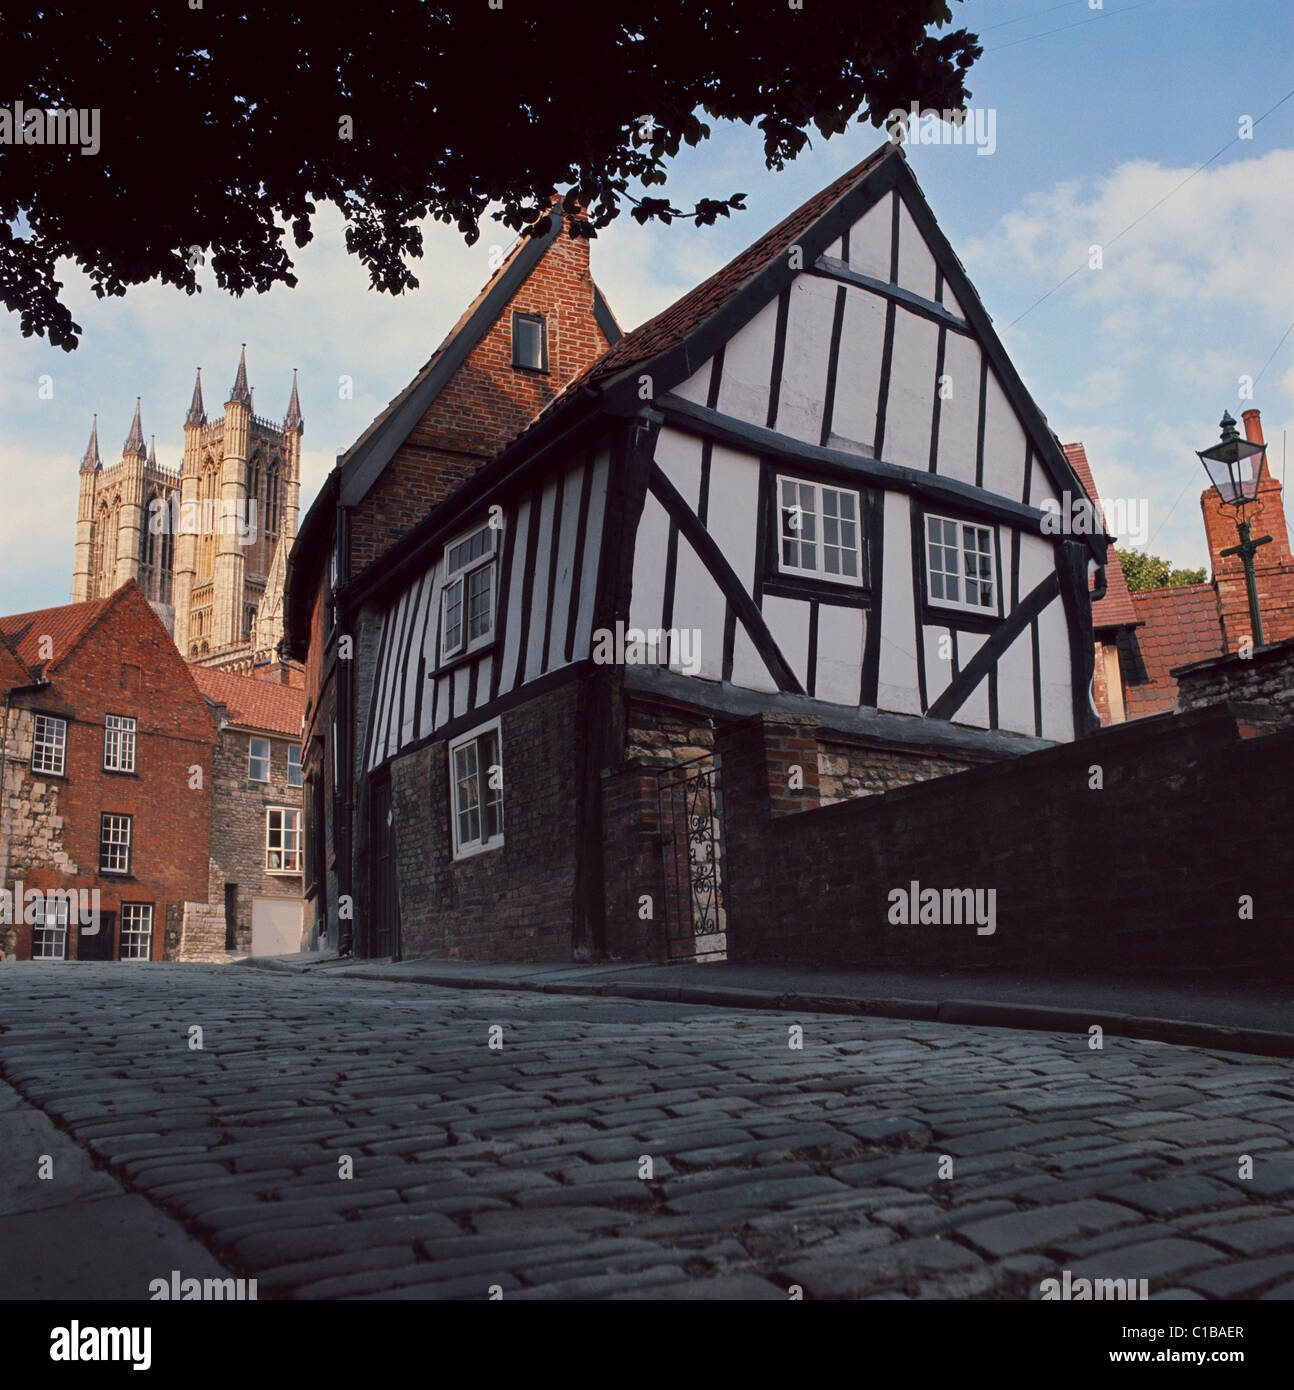 Lincoln, rue pavée pittoresque près de la cathédrale de Lincoln, Lincolshire, England, UK, FR Banque D'Images